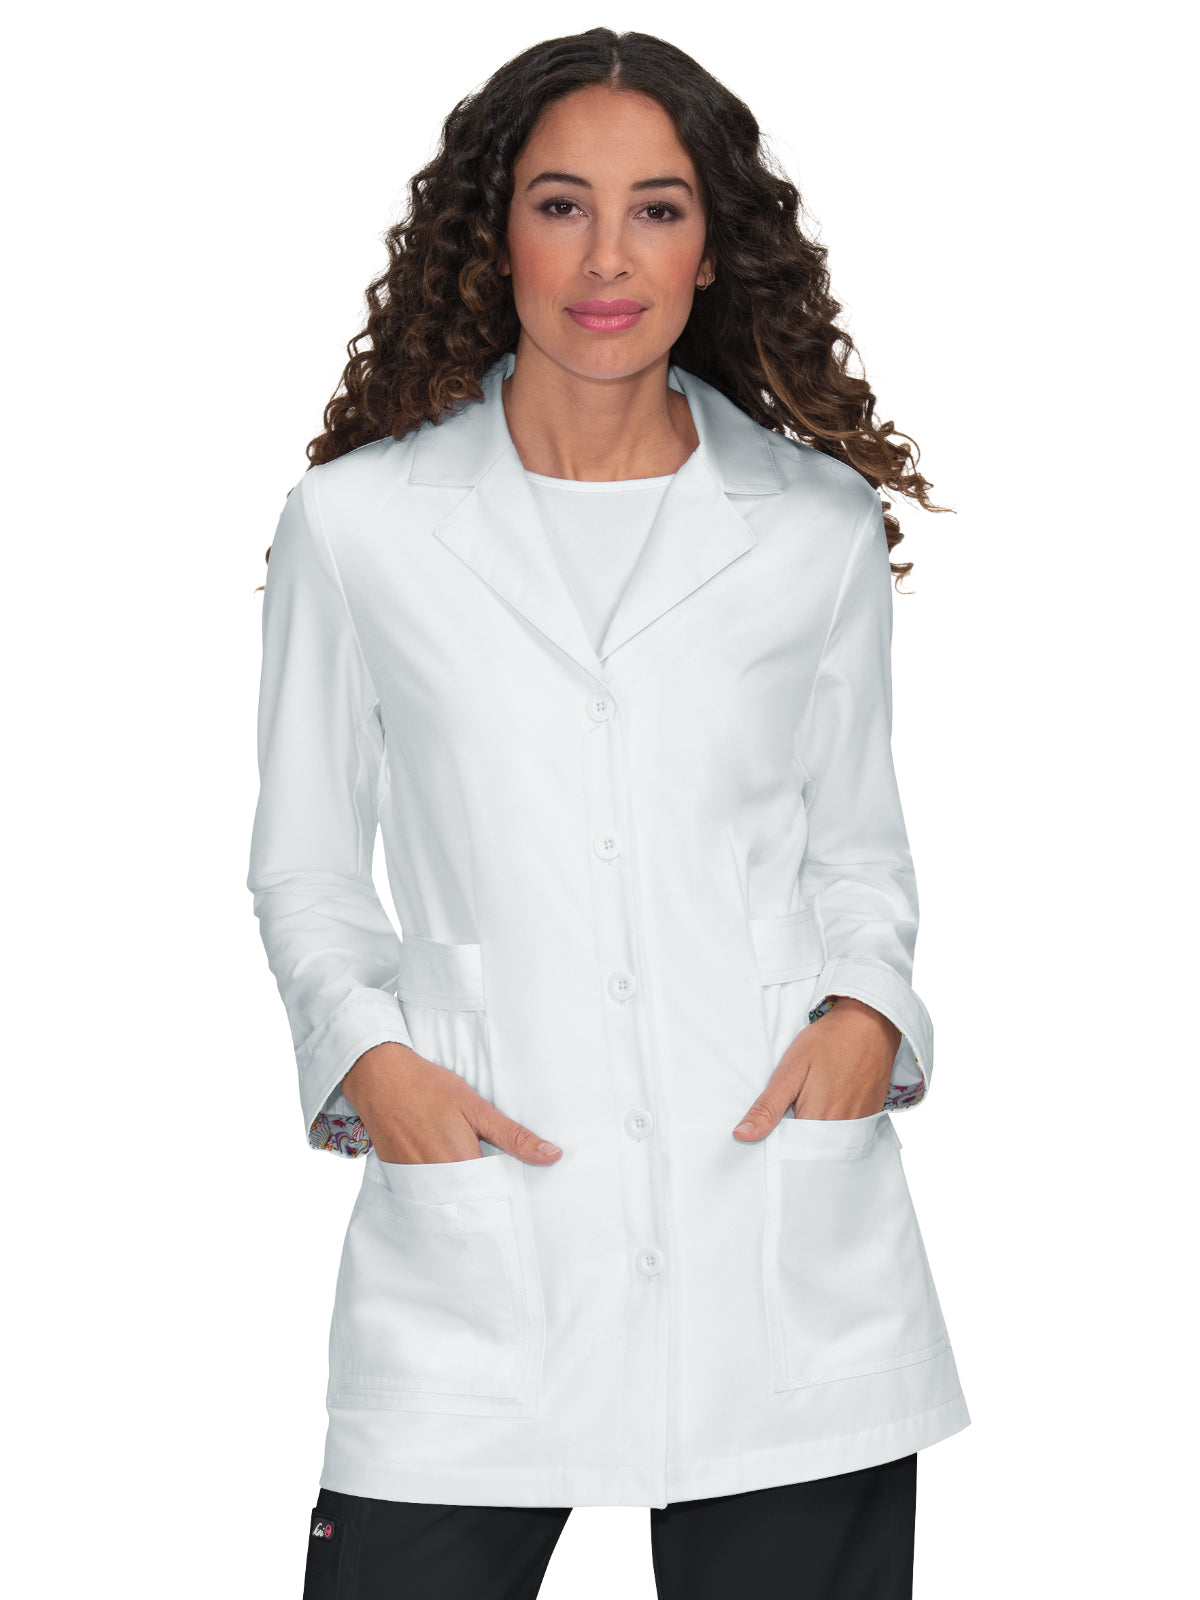 Women's Button-Front Lab Coat